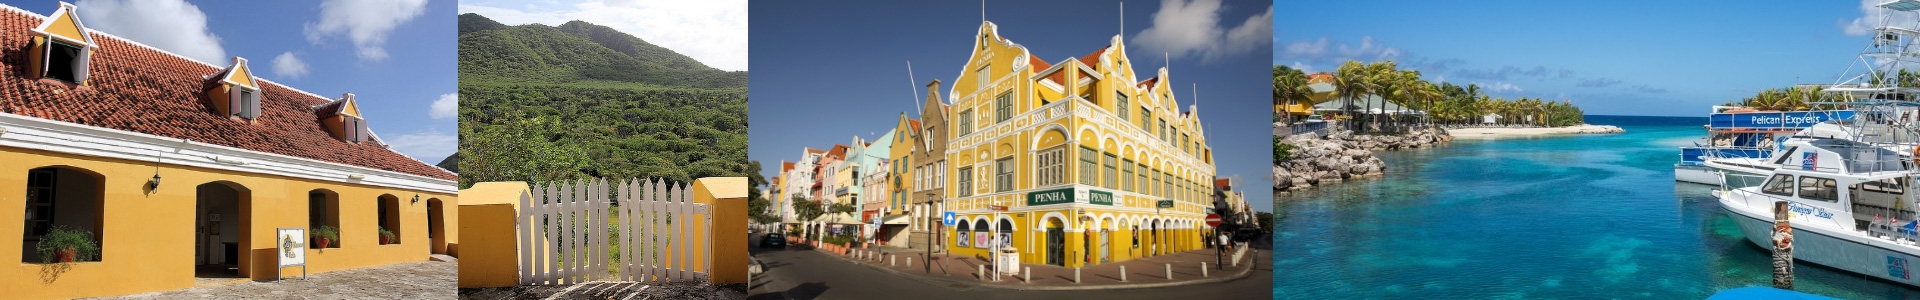 aankoopmakelaar Curaçao